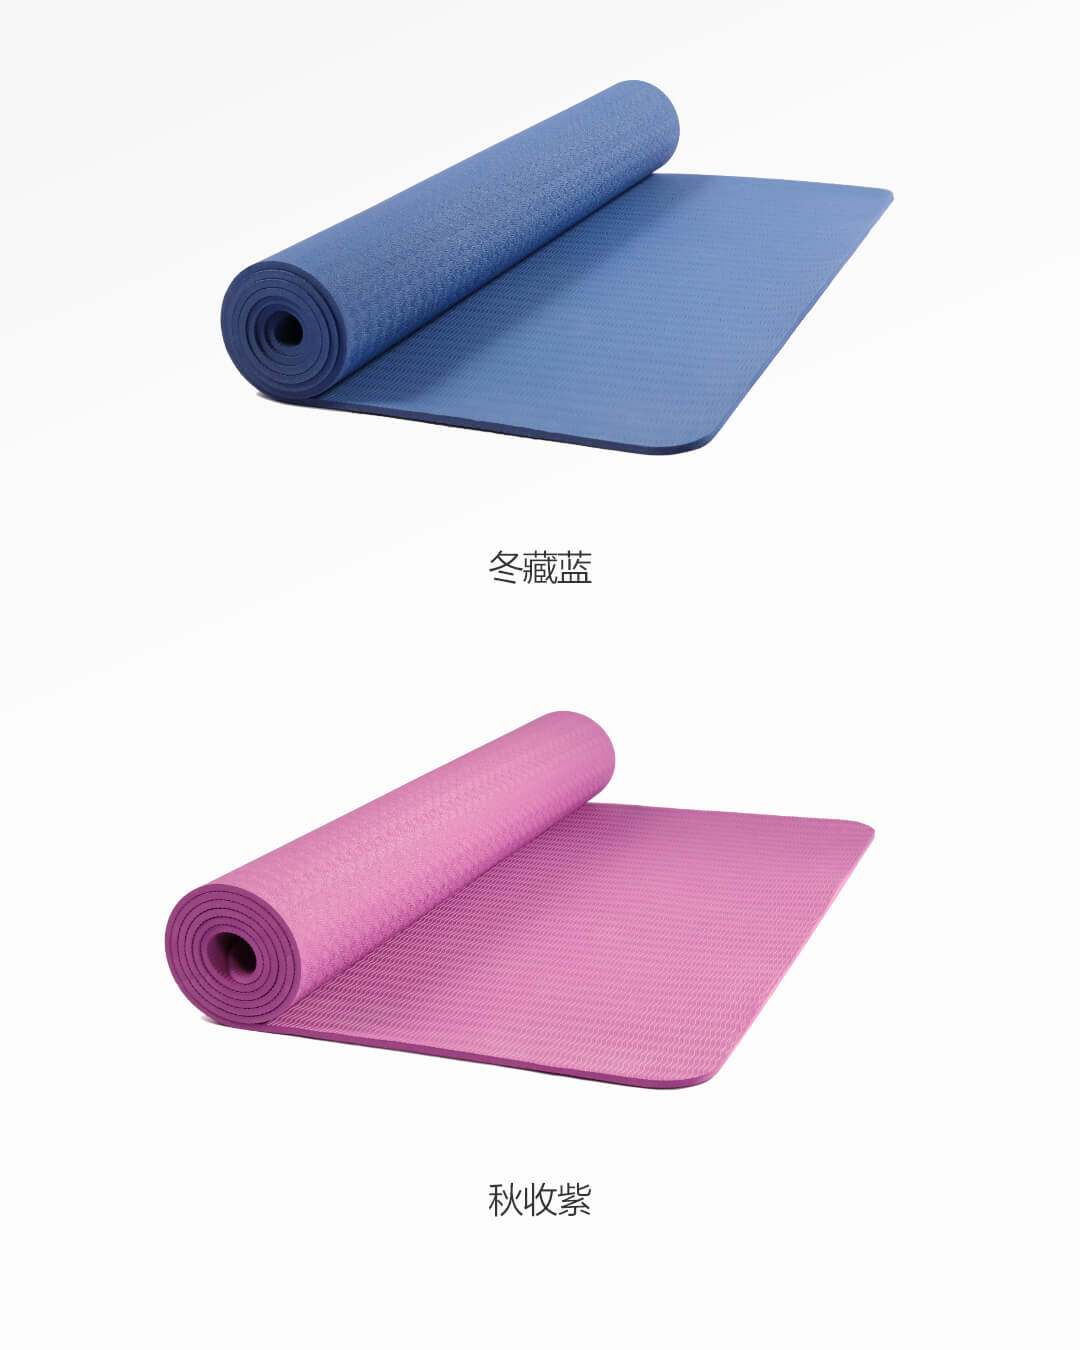 【中國直郵】小米有品 YUNMAI單色防滑瑜珈墊 藏藍色 常規版